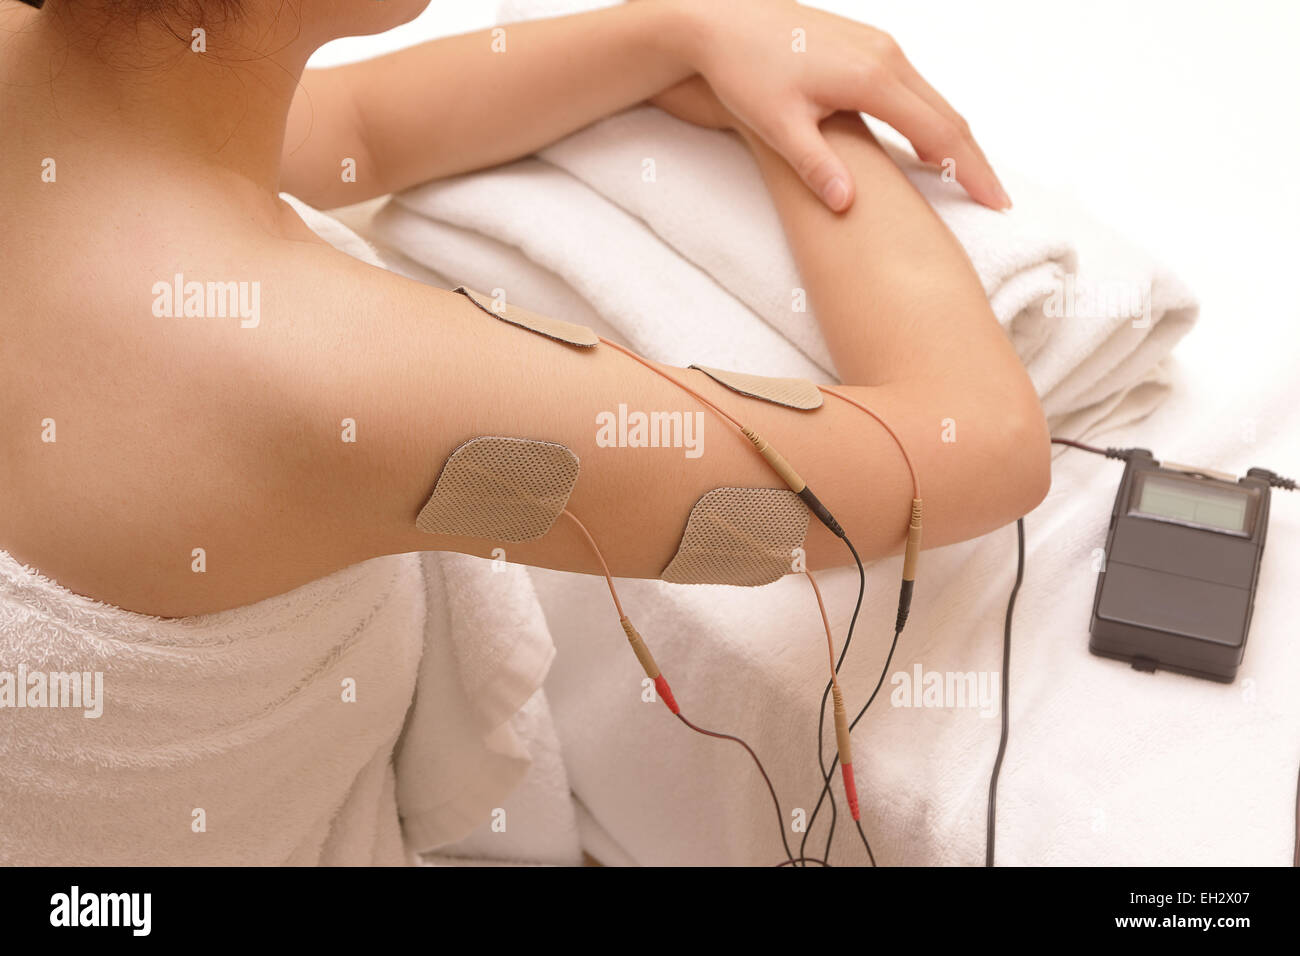 Asiatische Frau tut Massage der Elektro - Stimulation (TENs) für die Schulter Stockfoto